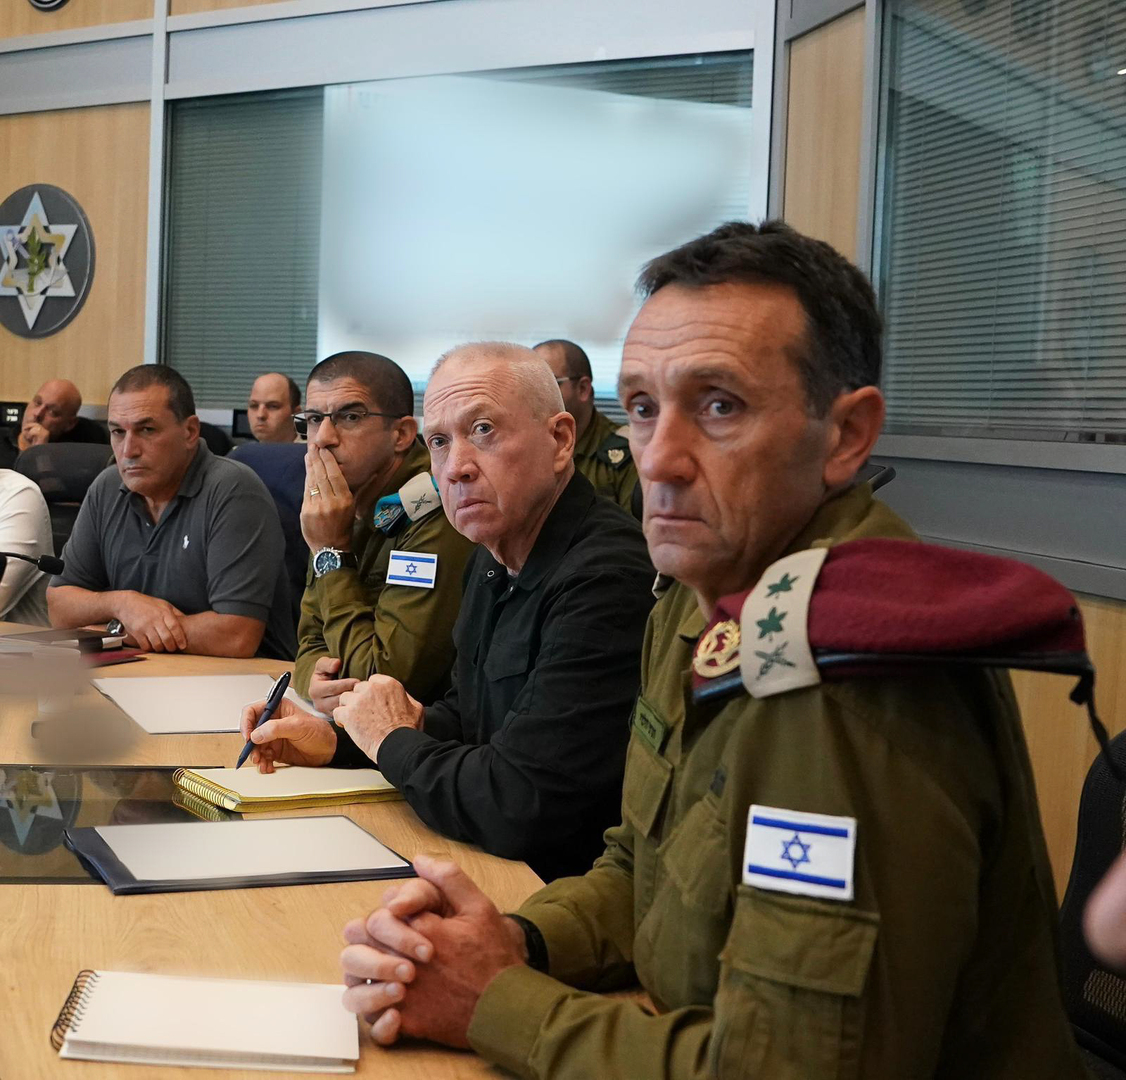 الأركان الإسرائيلية: قيادة حماس تعلق آمالها على وقف القتال وهي مقتنعة أن تلك اللحظة قريبة